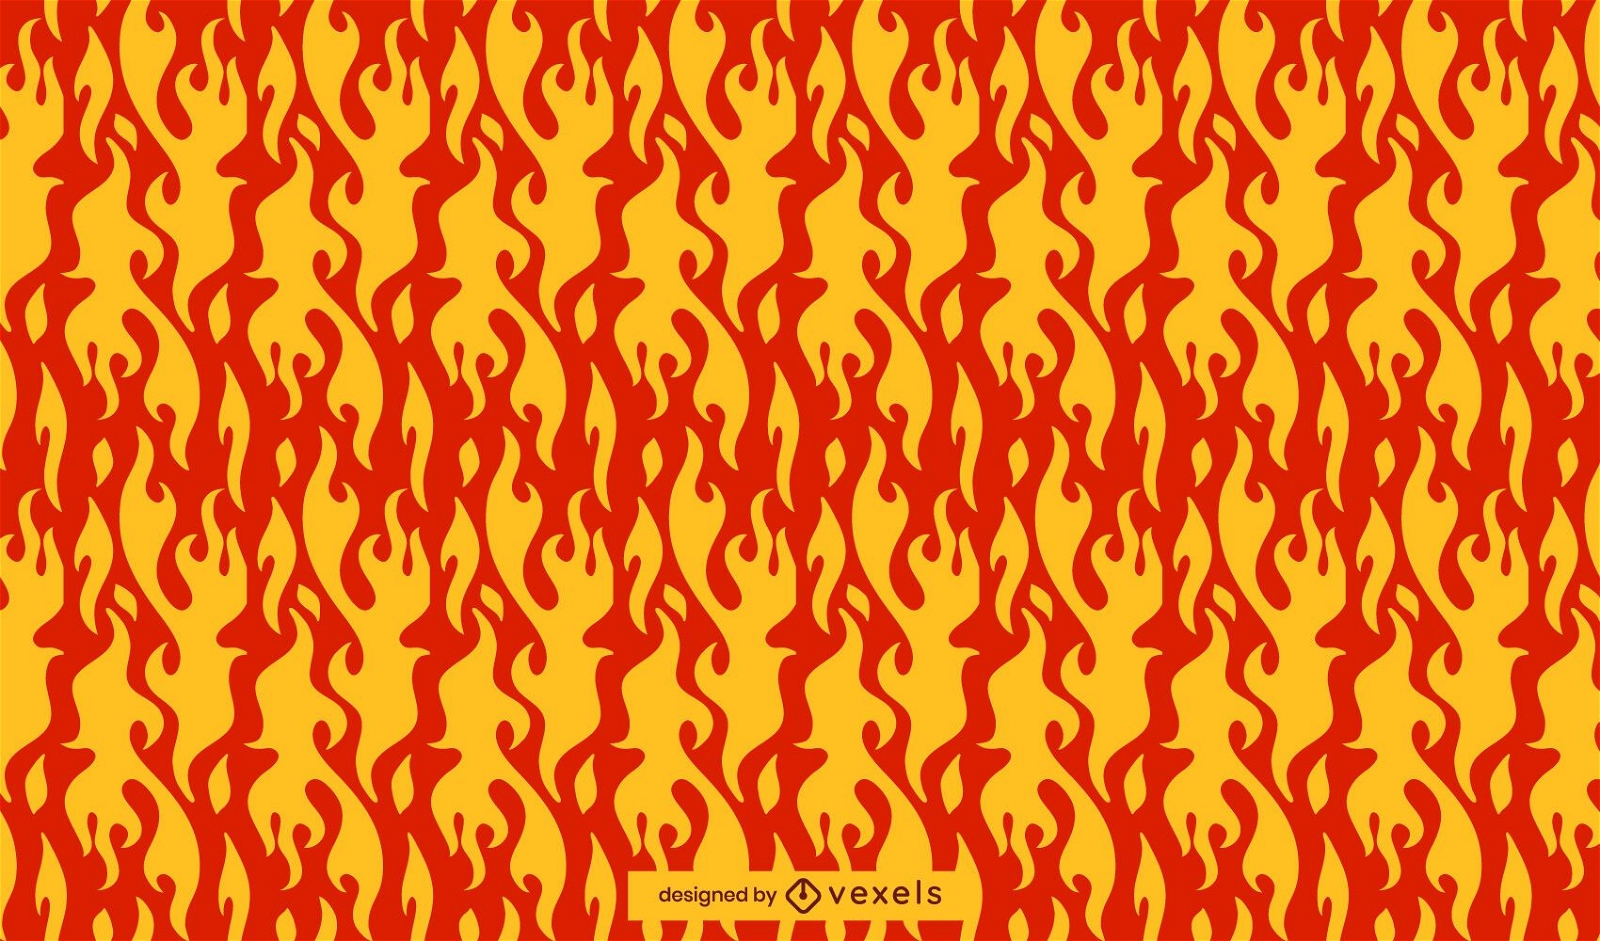 Desenho de padrão de chamas vermelhas